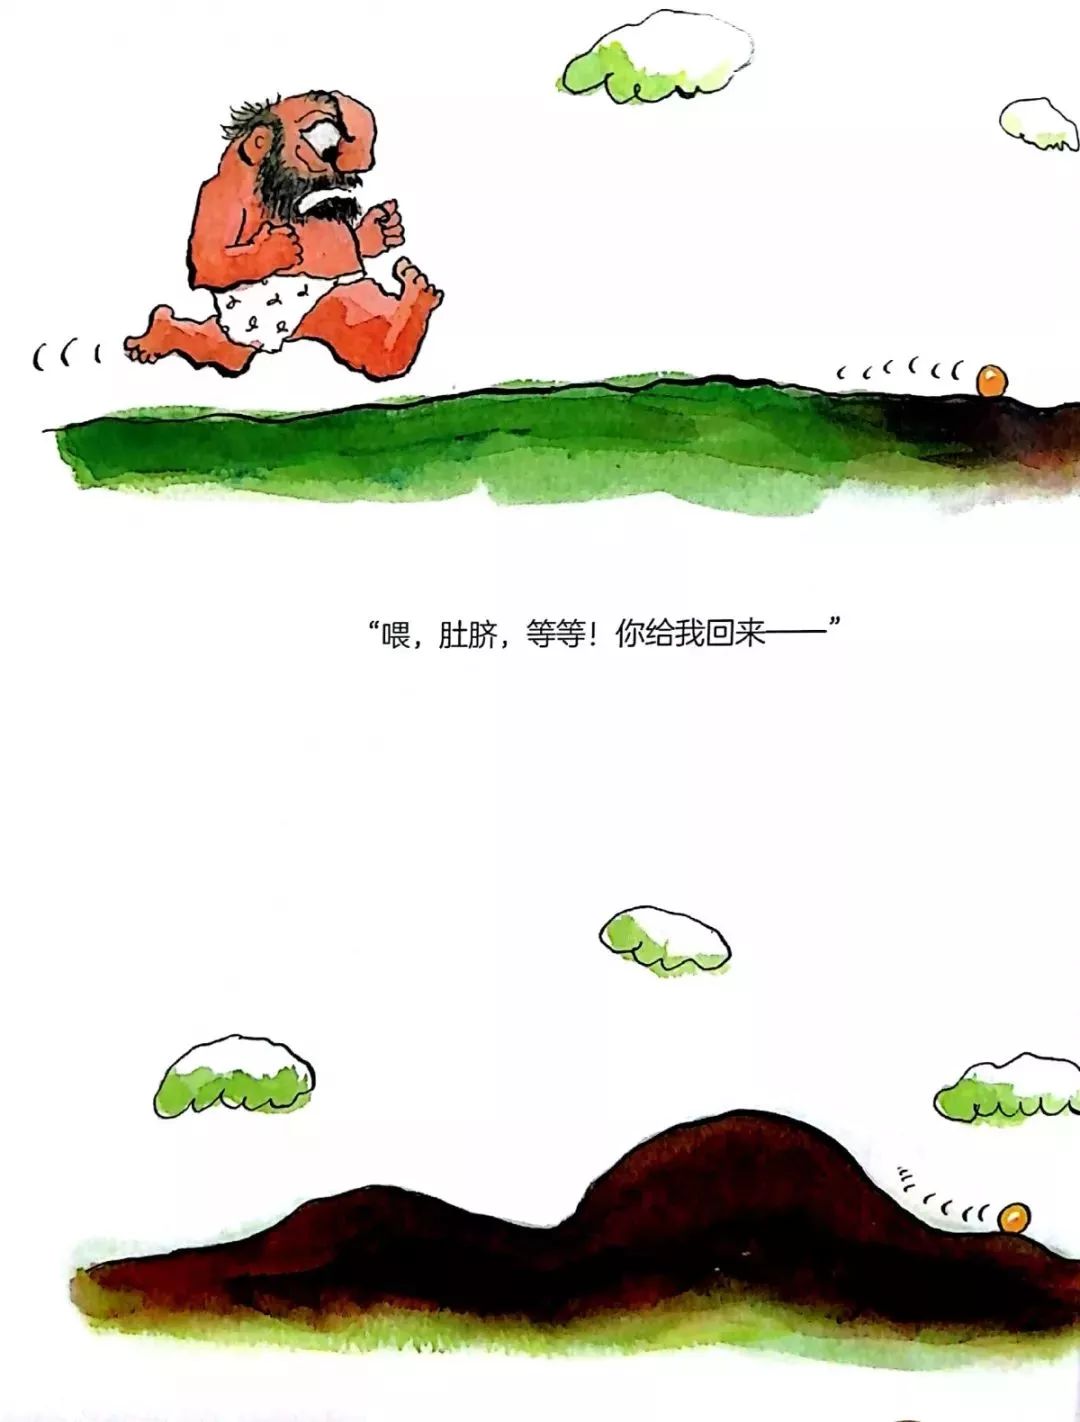 墨洋之声丨深见春夫大个子图画书系列《蜜橘肚脐》